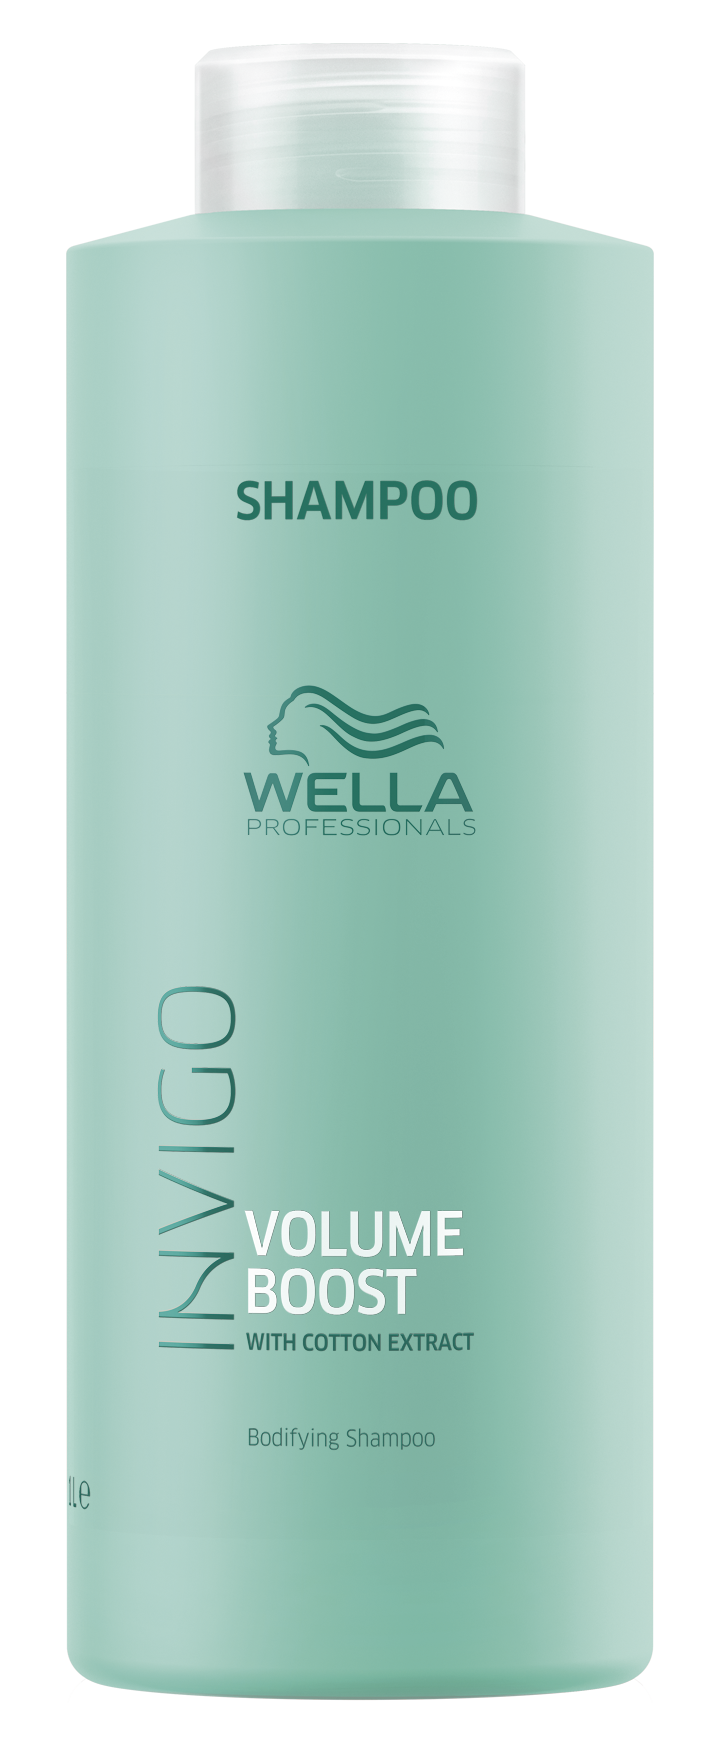 WELLA PROFESSIONALS Шампунь для придания объема / Volume Boost 1000 мл шампунь wella professionals elements calming 1000 мл